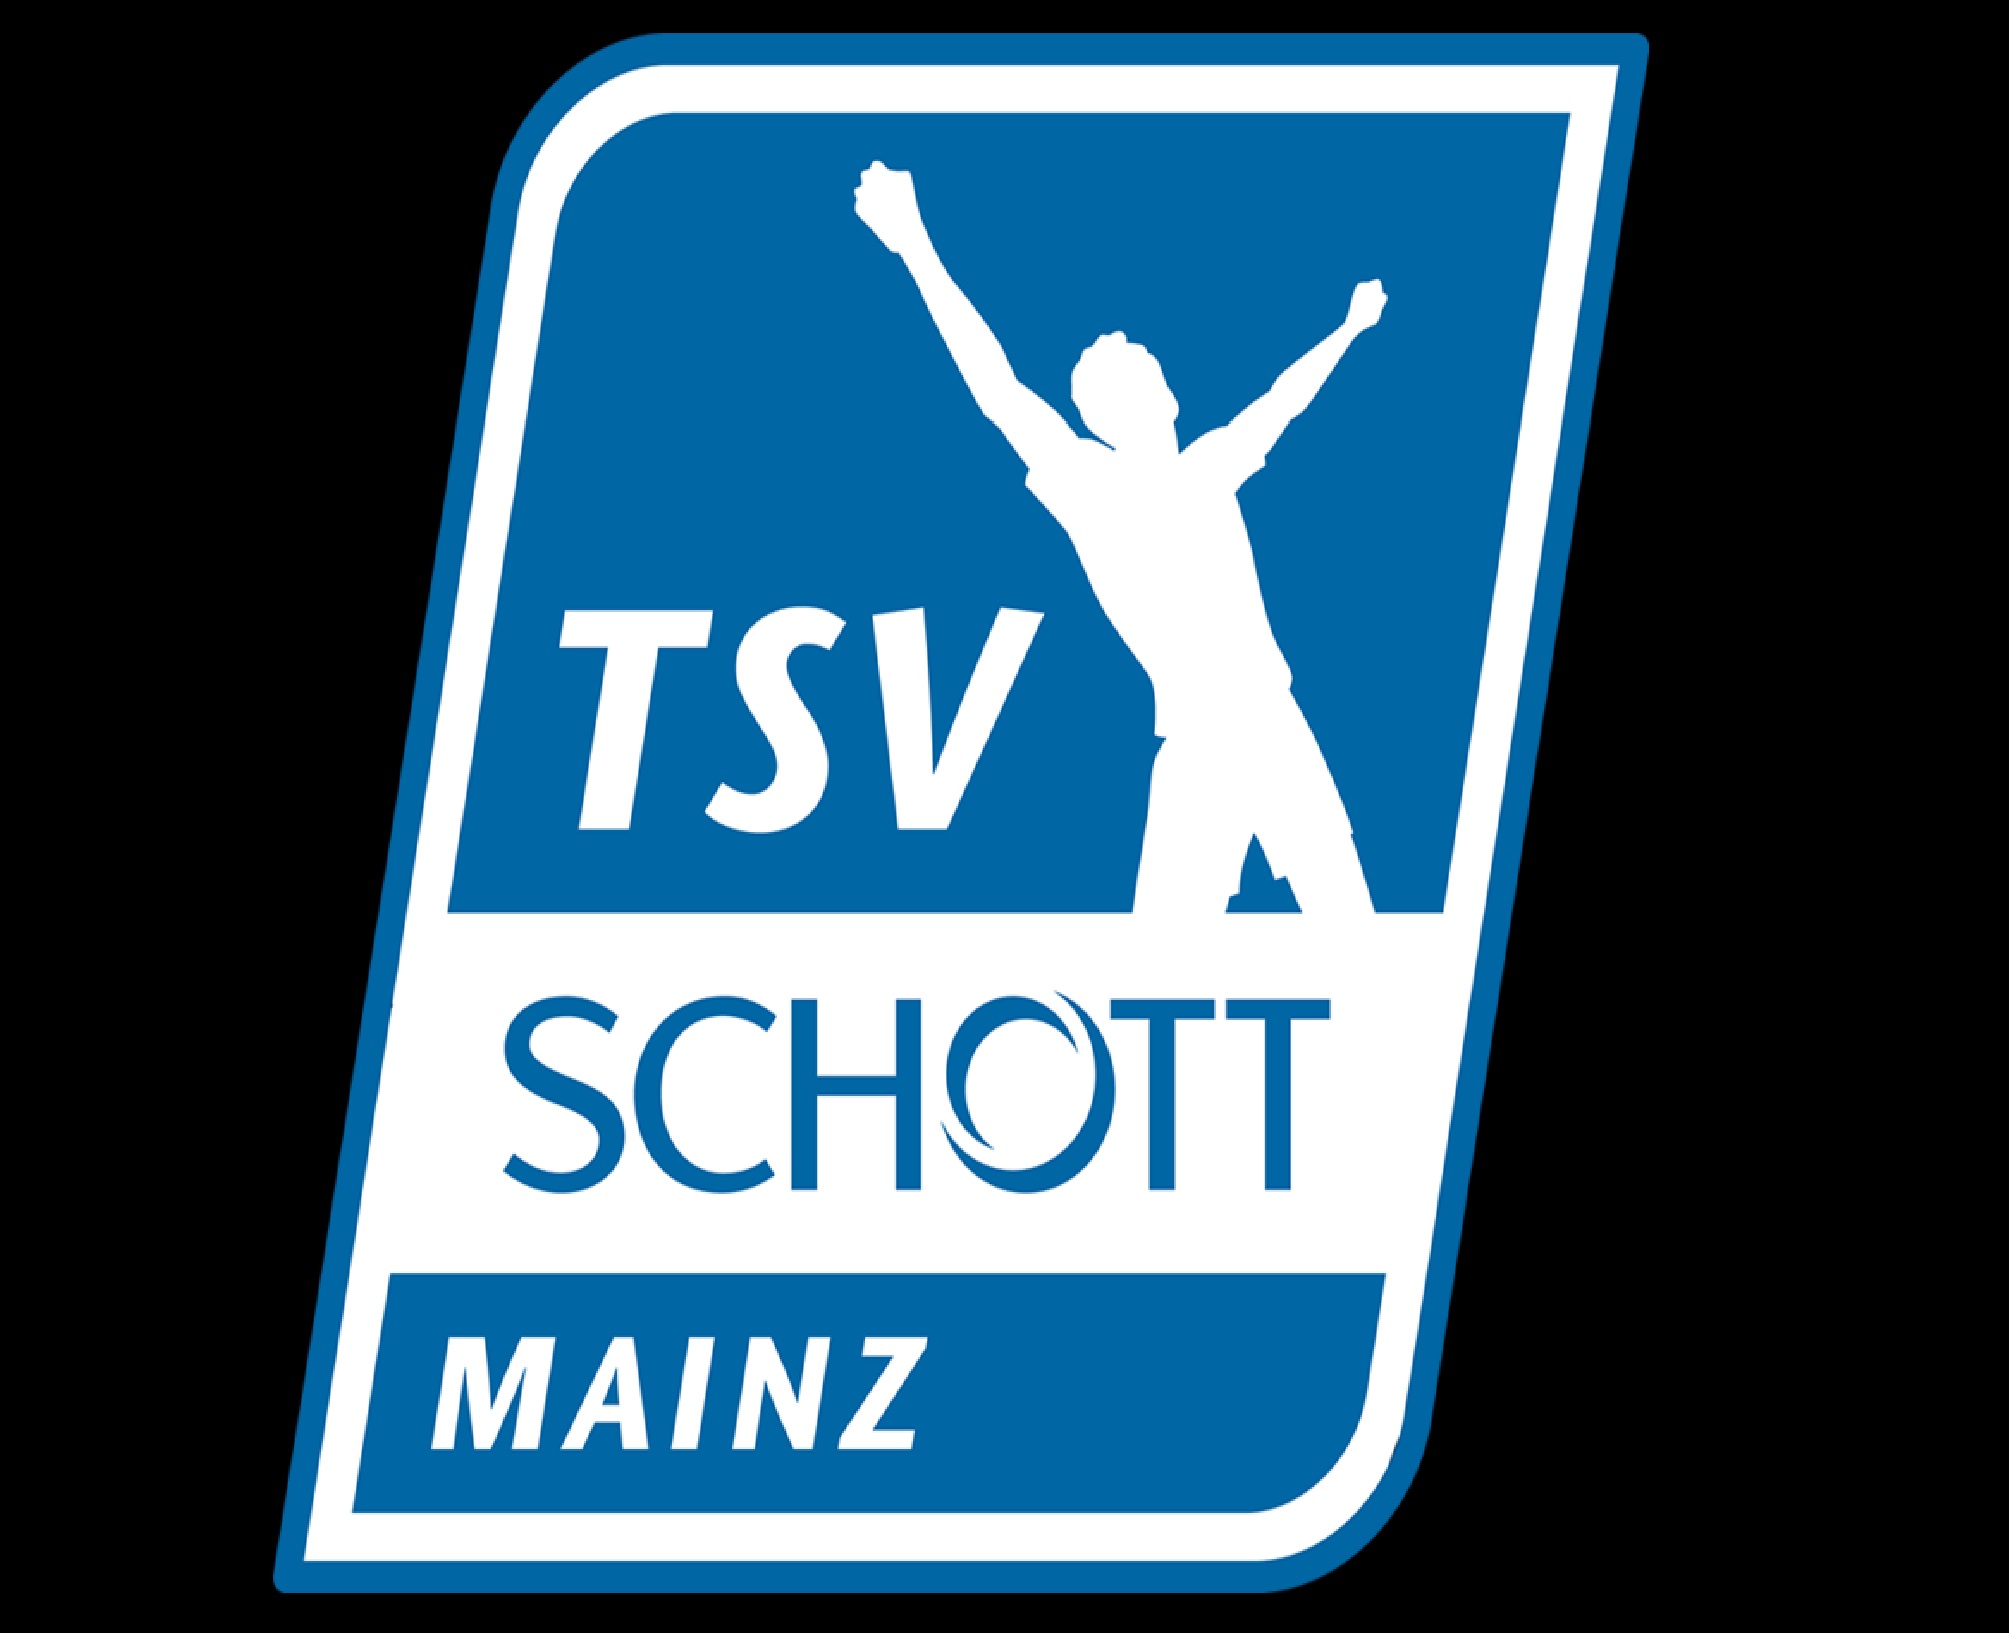 tsv-schott-mainz-10-football-club-facts